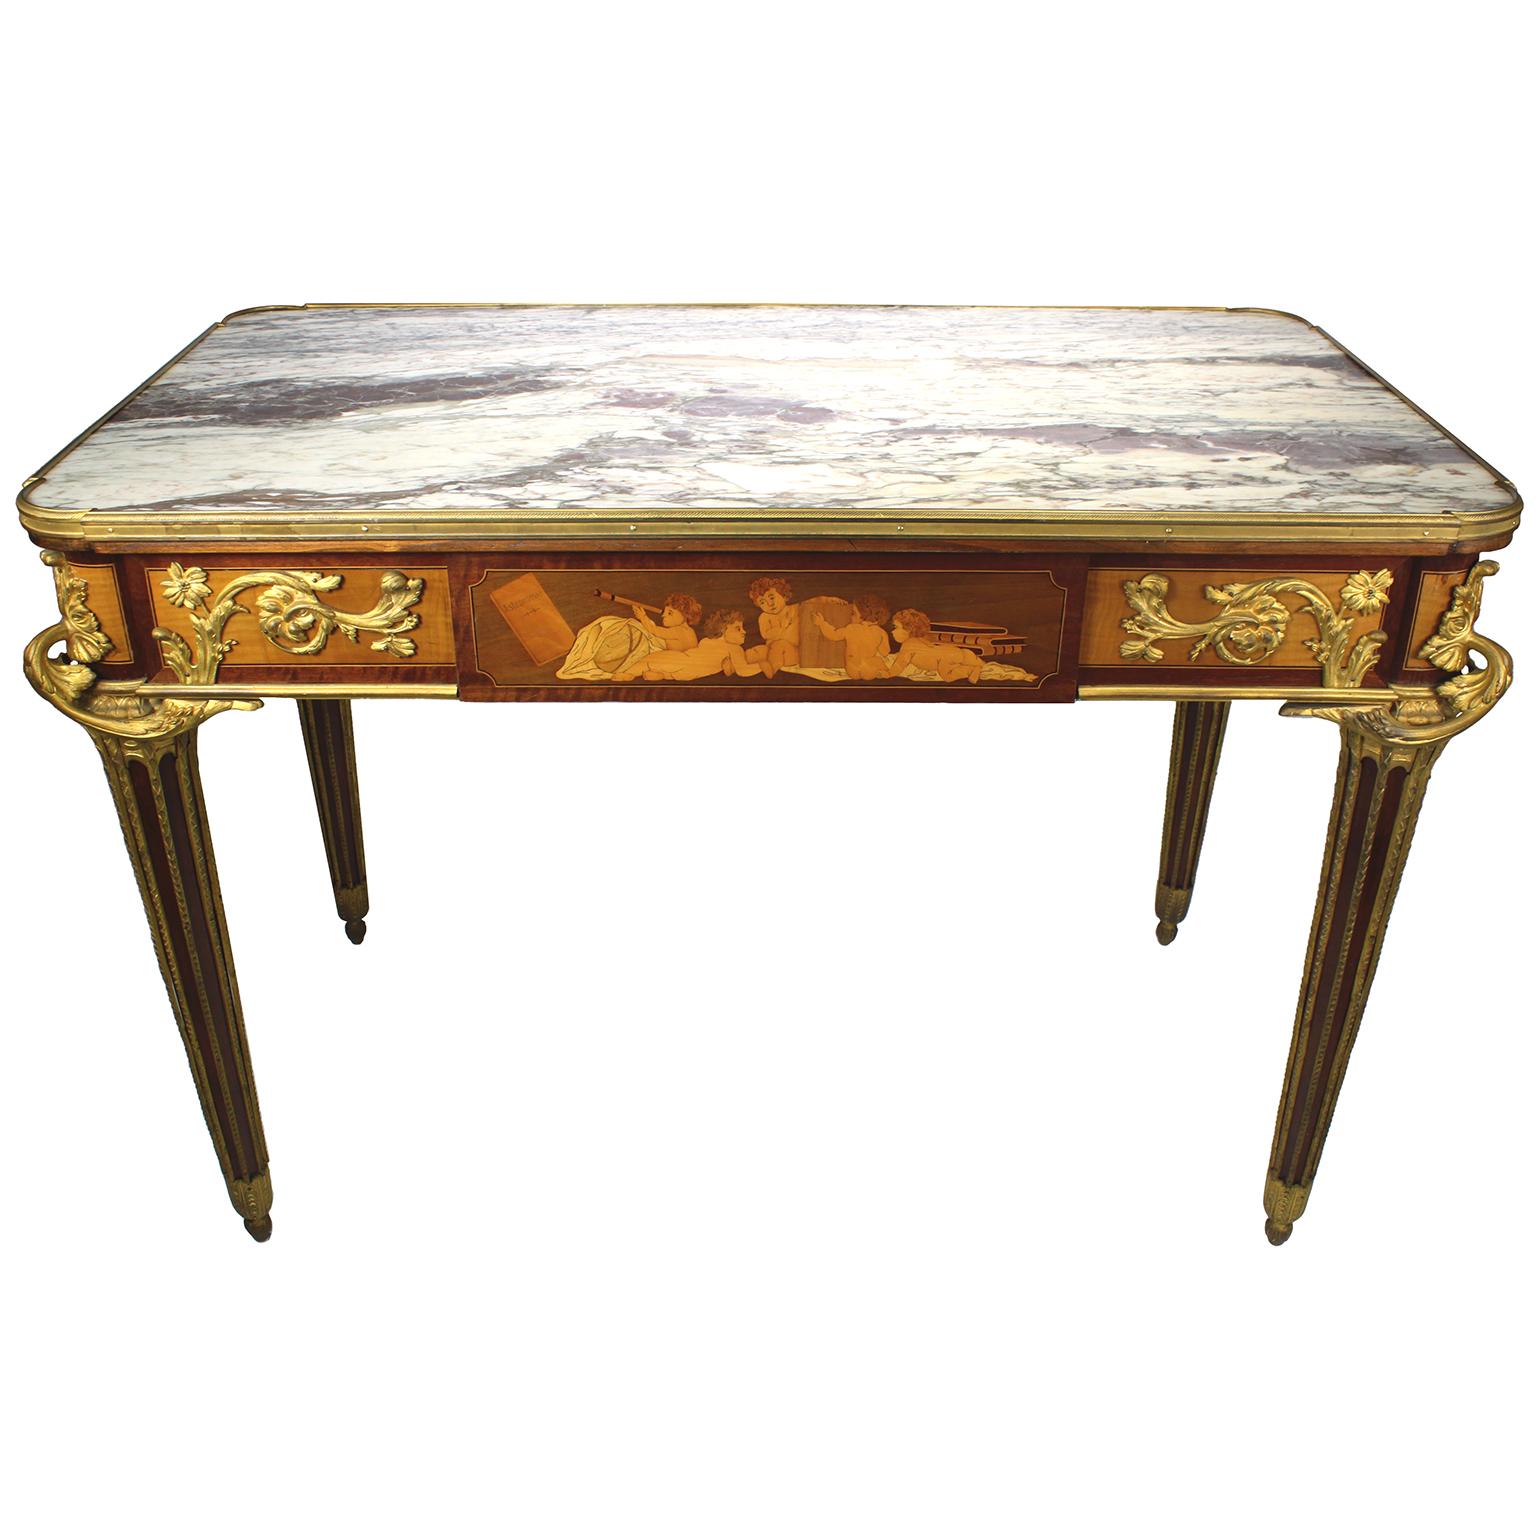 Très belle table centrale ou écritoire en bois de roi et marqueterie de bois de citronnier, montée en bronze doré, attribuée à François Linke (1855-1946), d'après le modèle de Jean-Henri Riesener (français, 1734-1806). La table à plateau